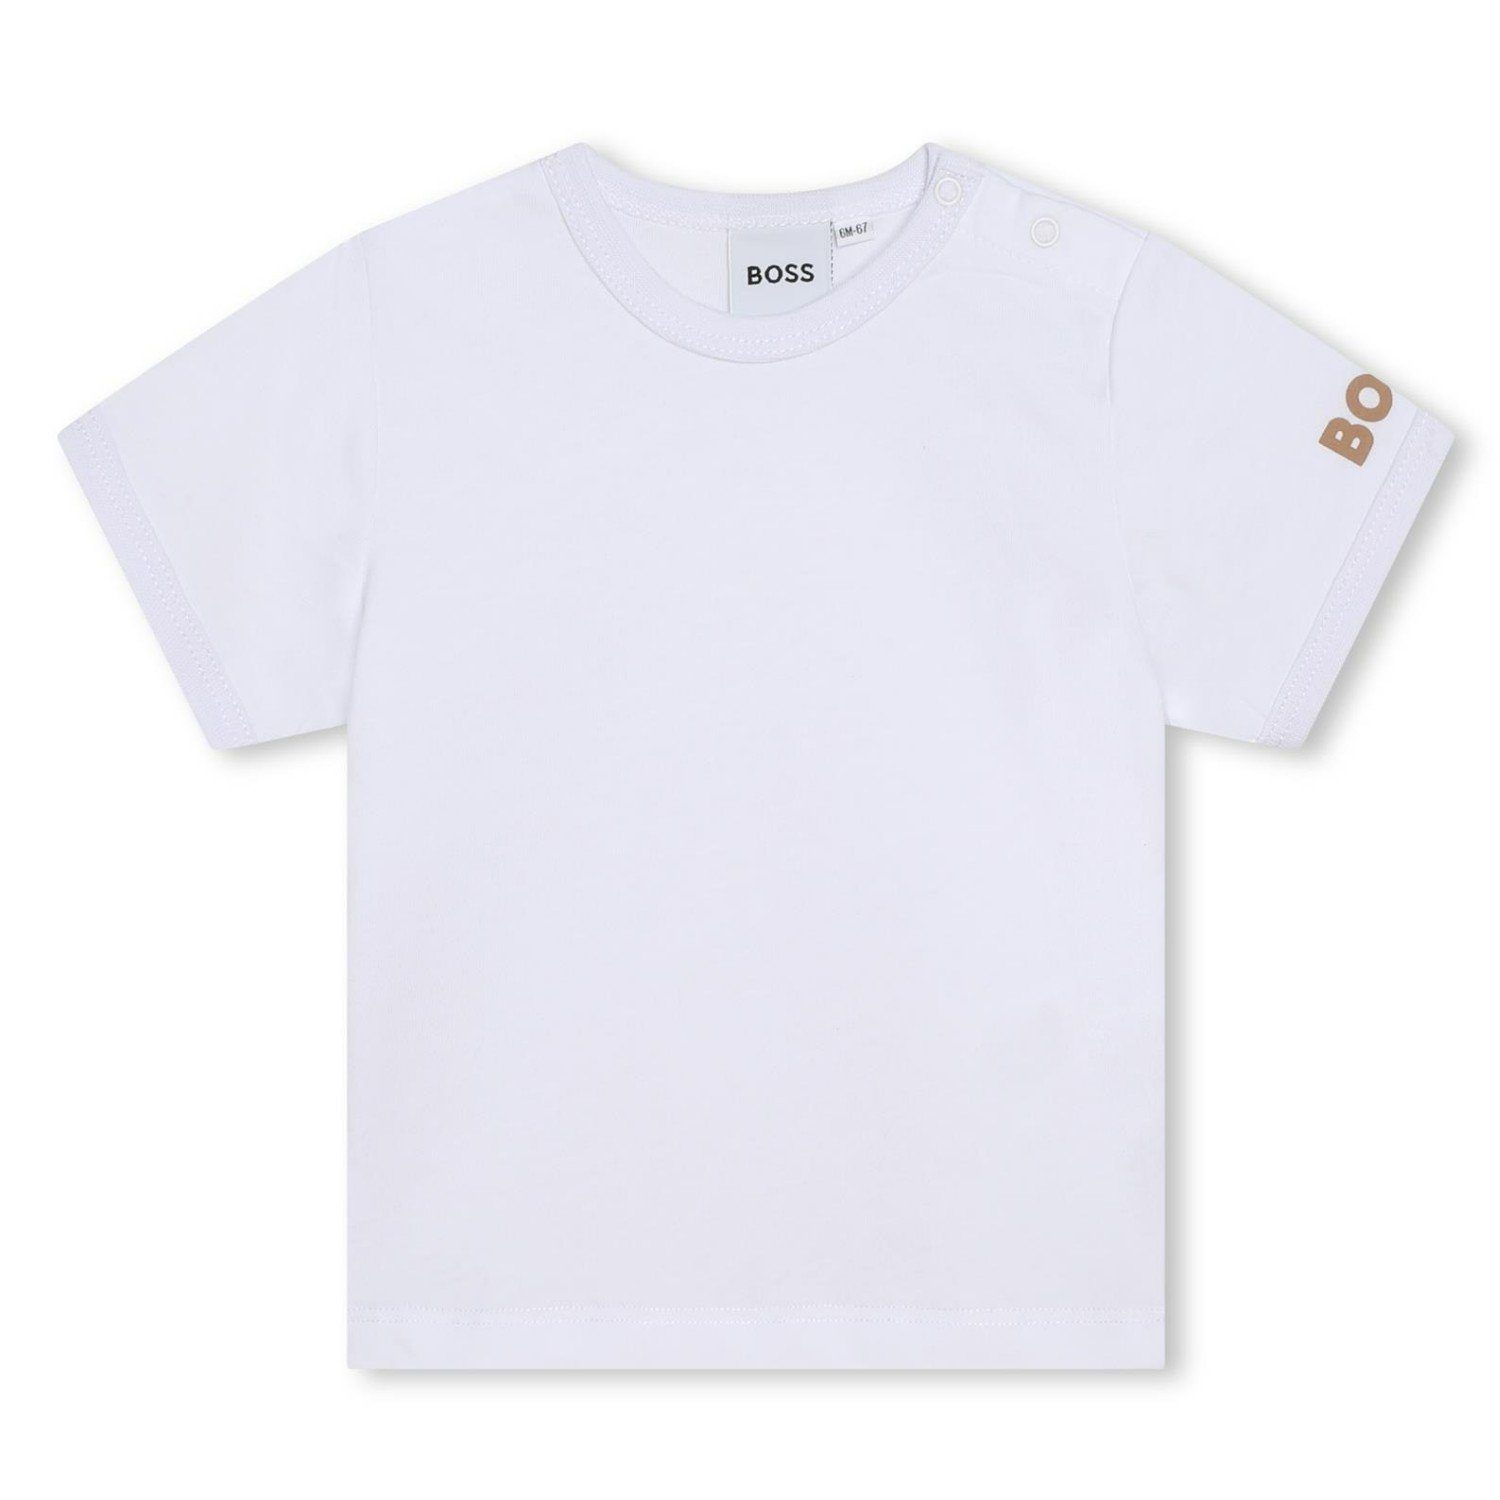 BOSS Neugeborenen-Geschenkset Latzhose) und Overall BOSS aus Kombination T-Shirt und Biobaumwolle (T-Shirt